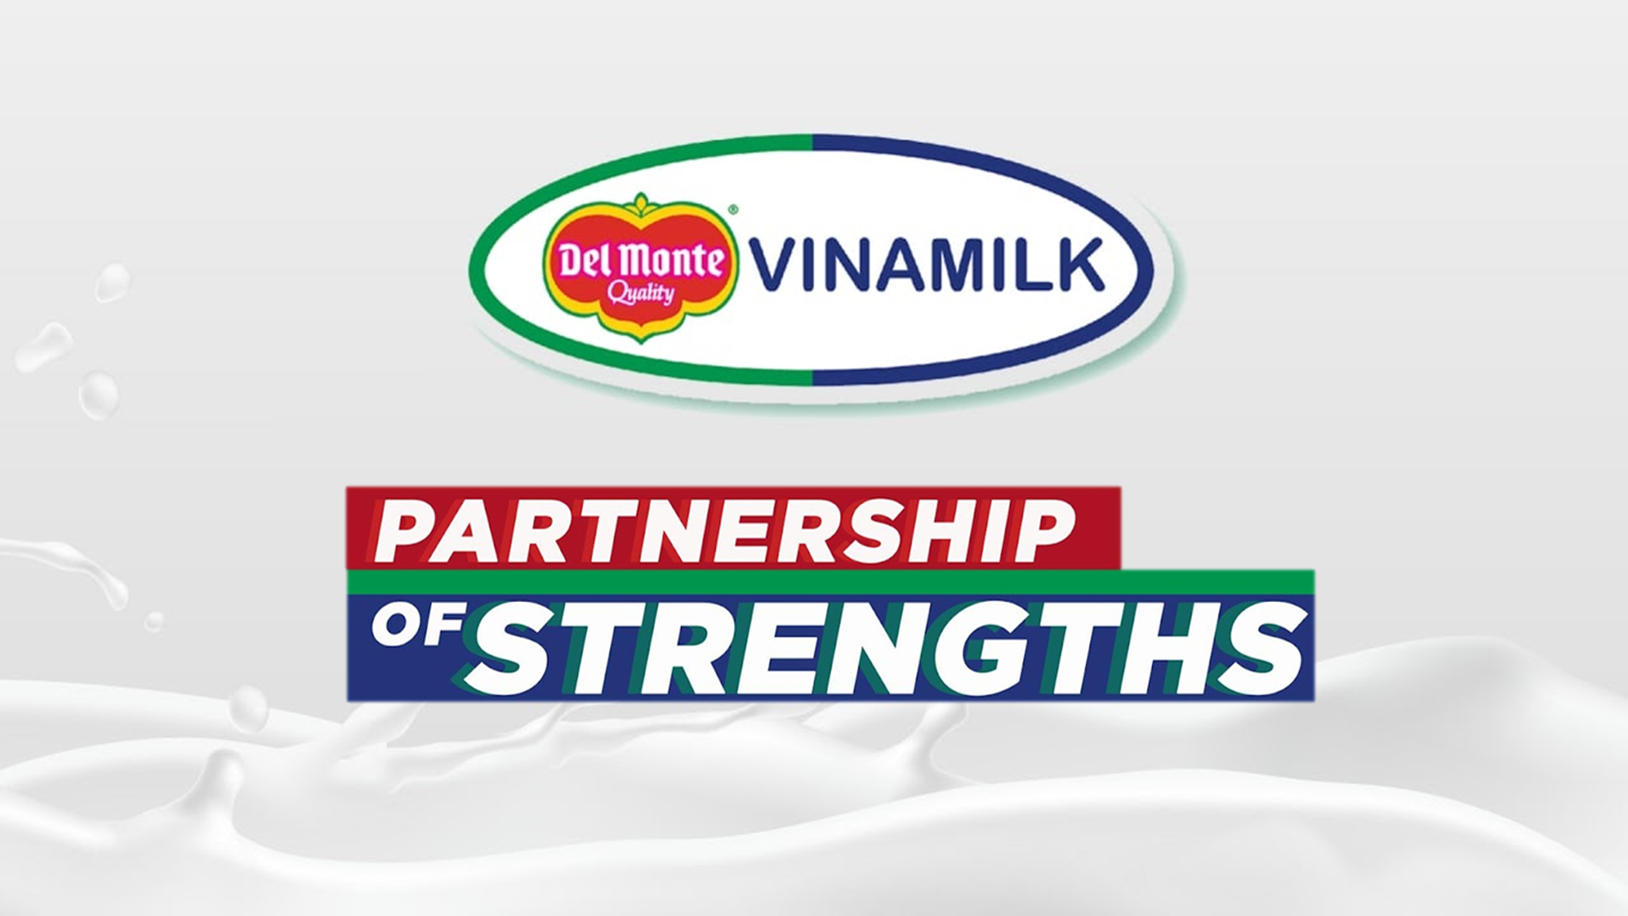 Logo của liên doanh Del Monte - Vinamilk đã được công bố chính thức